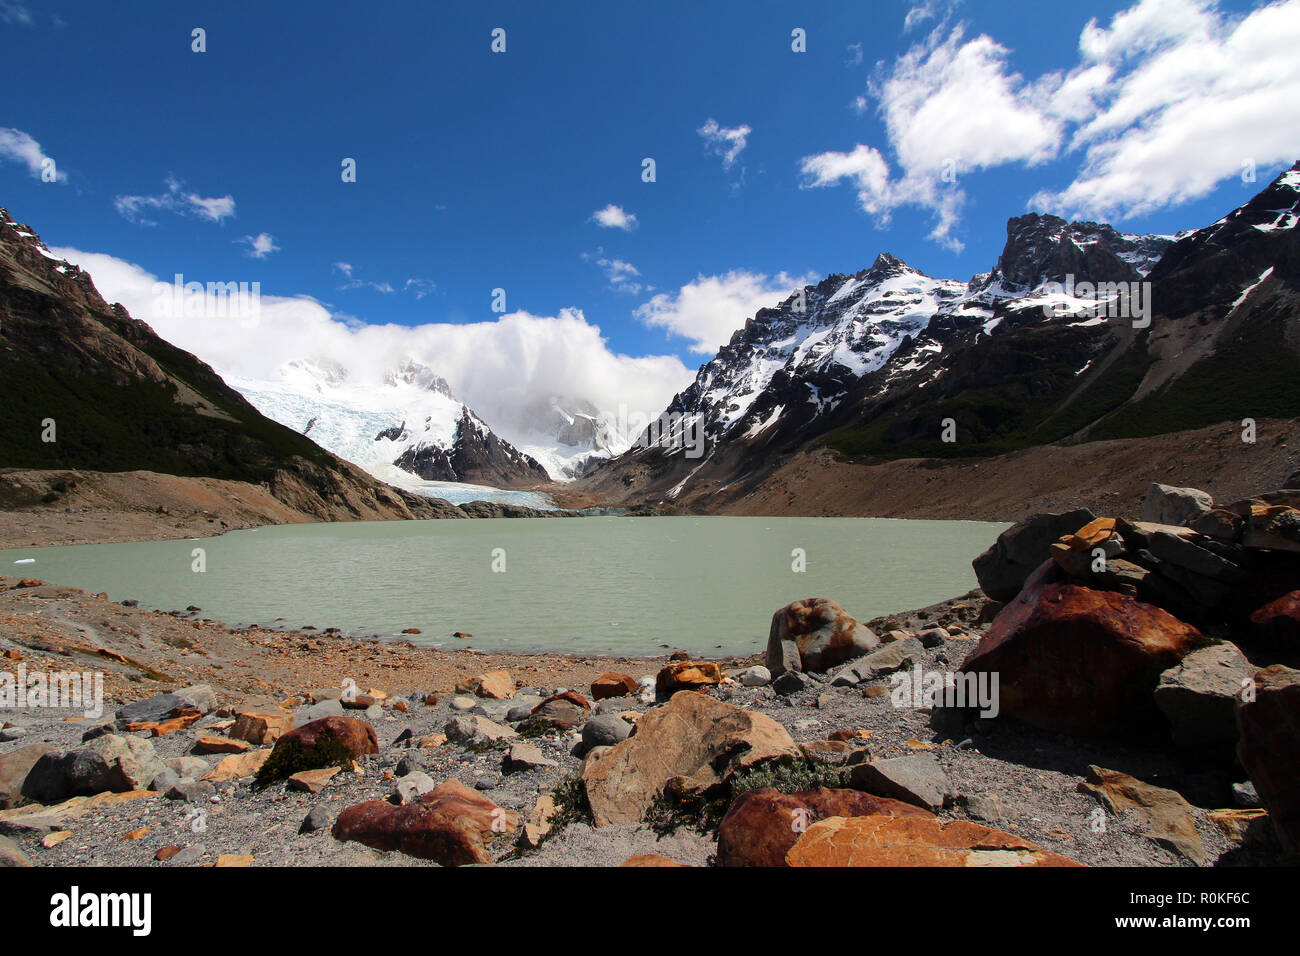 Les roches rouges ferreux oxydés entourent un petit lac dans les collines à l'extérieur d'El Chalten, dans le parc national des Glaciers, l'Argentine Banque D'Images